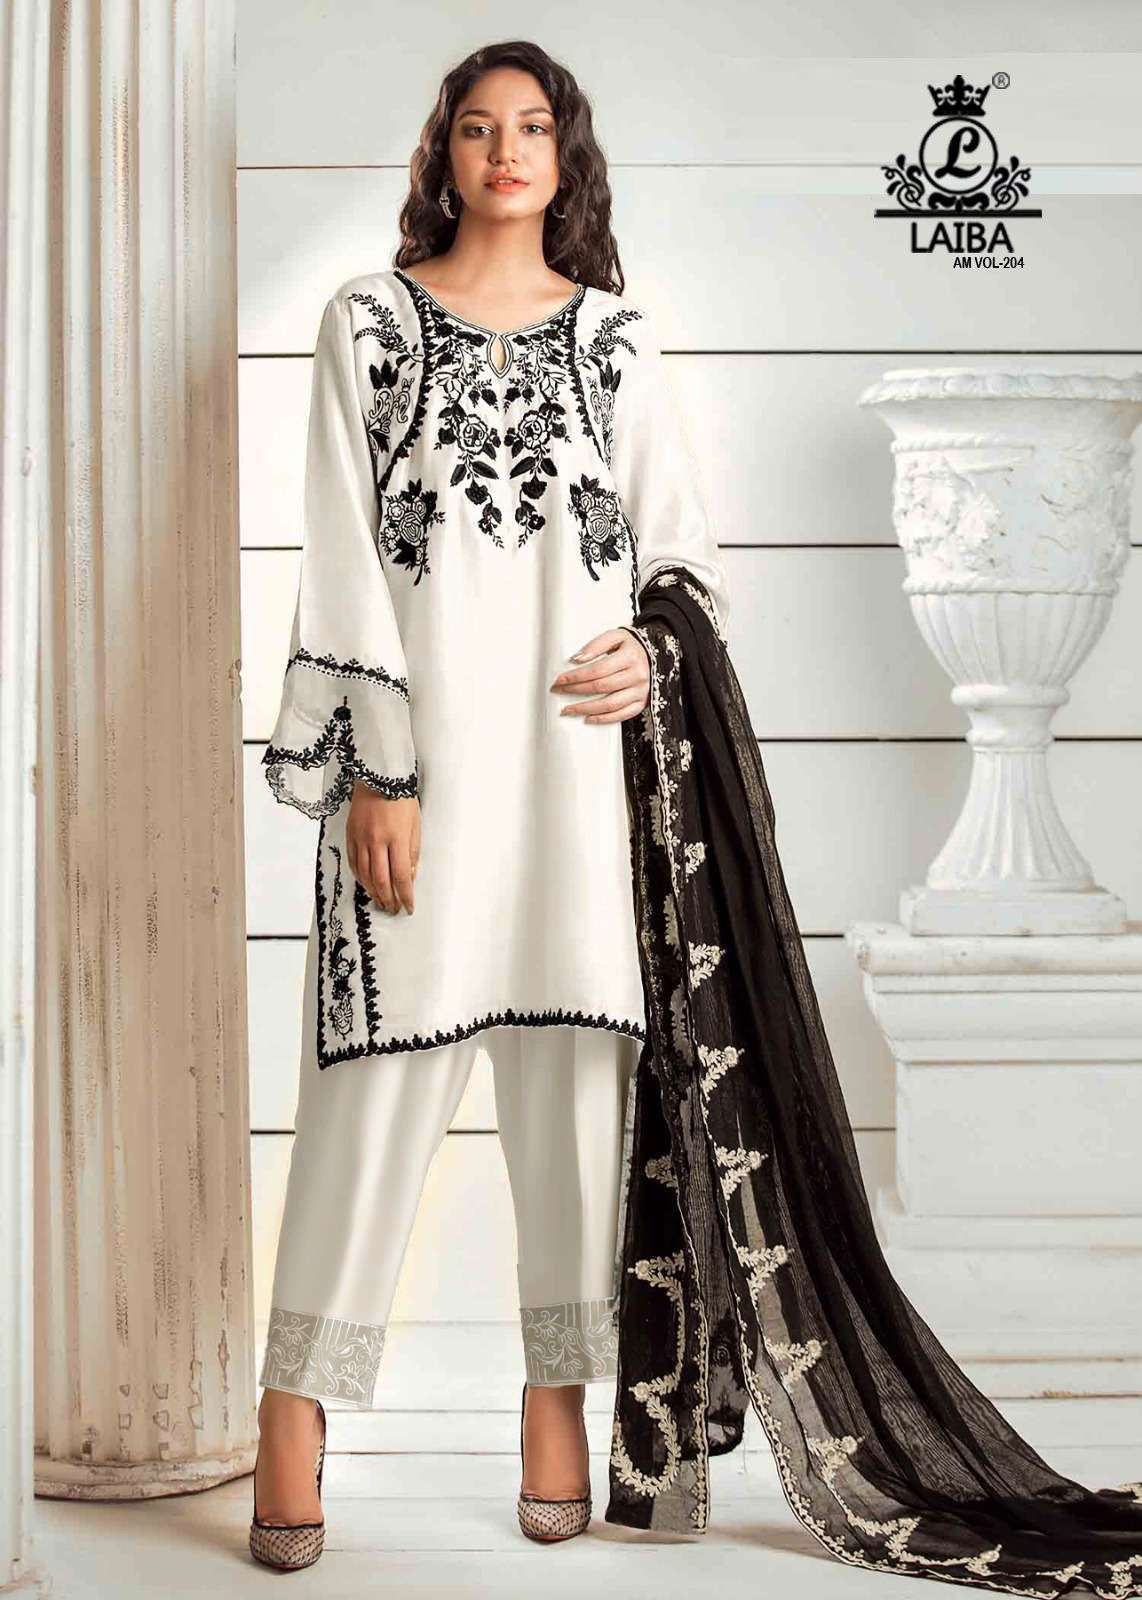 laiba am vol 204 designer georgette pakistani ready to wear catalogue wholesale dealer surat